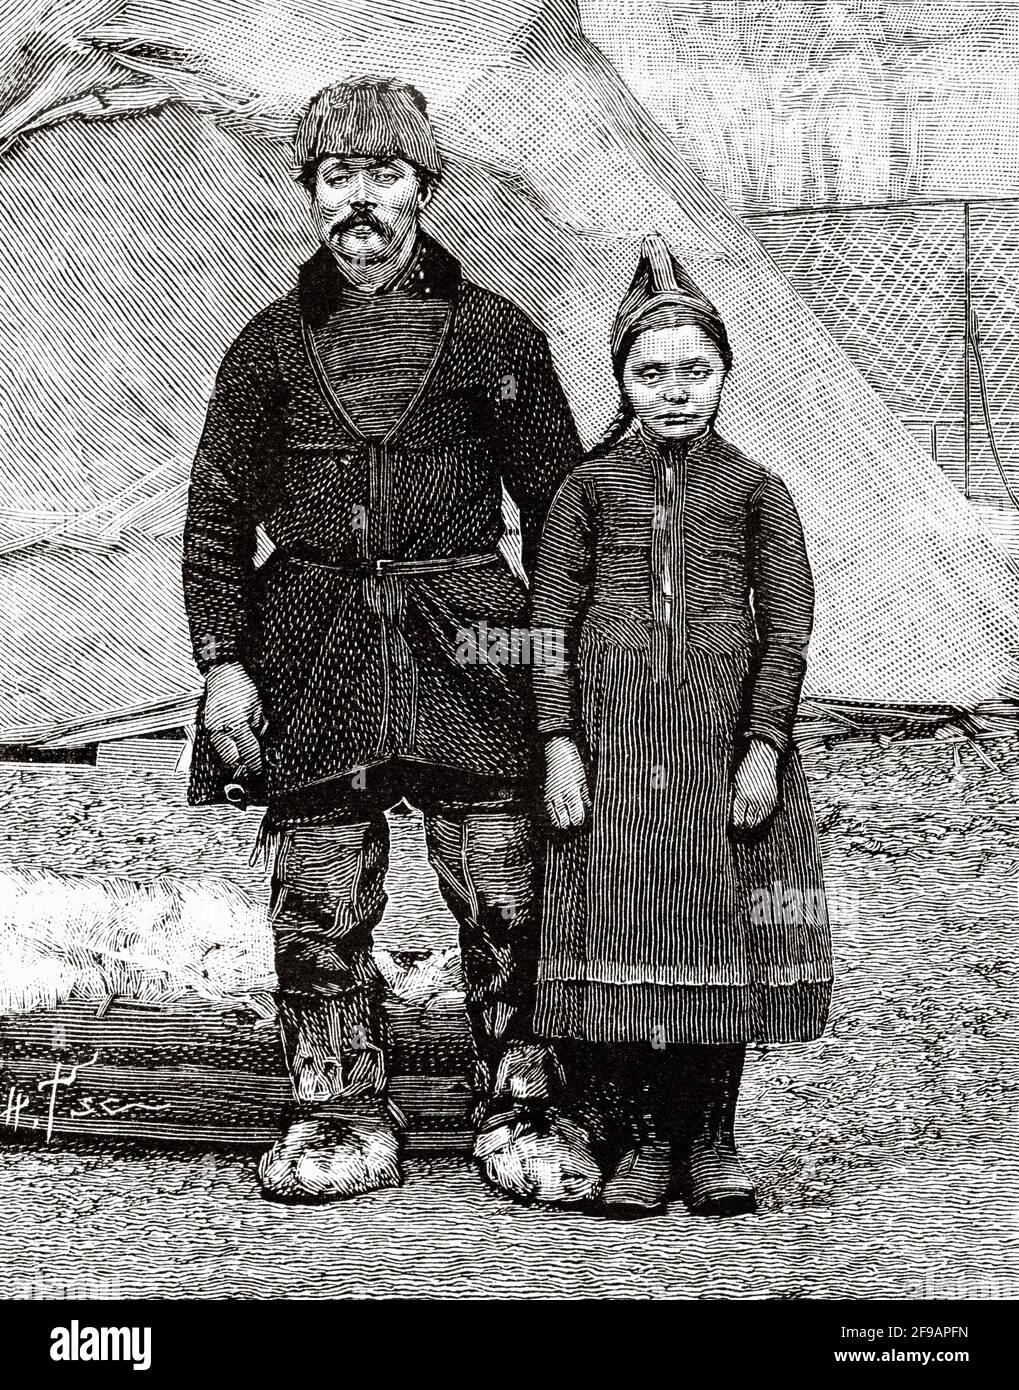 Lappland-Mann und seine Tochter in traditioneller Kleidung. Norwegen Skandinavien. Alte, gravierte Illustration aus dem 19. Jahrhundert von La Nature 1889 Stockfoto